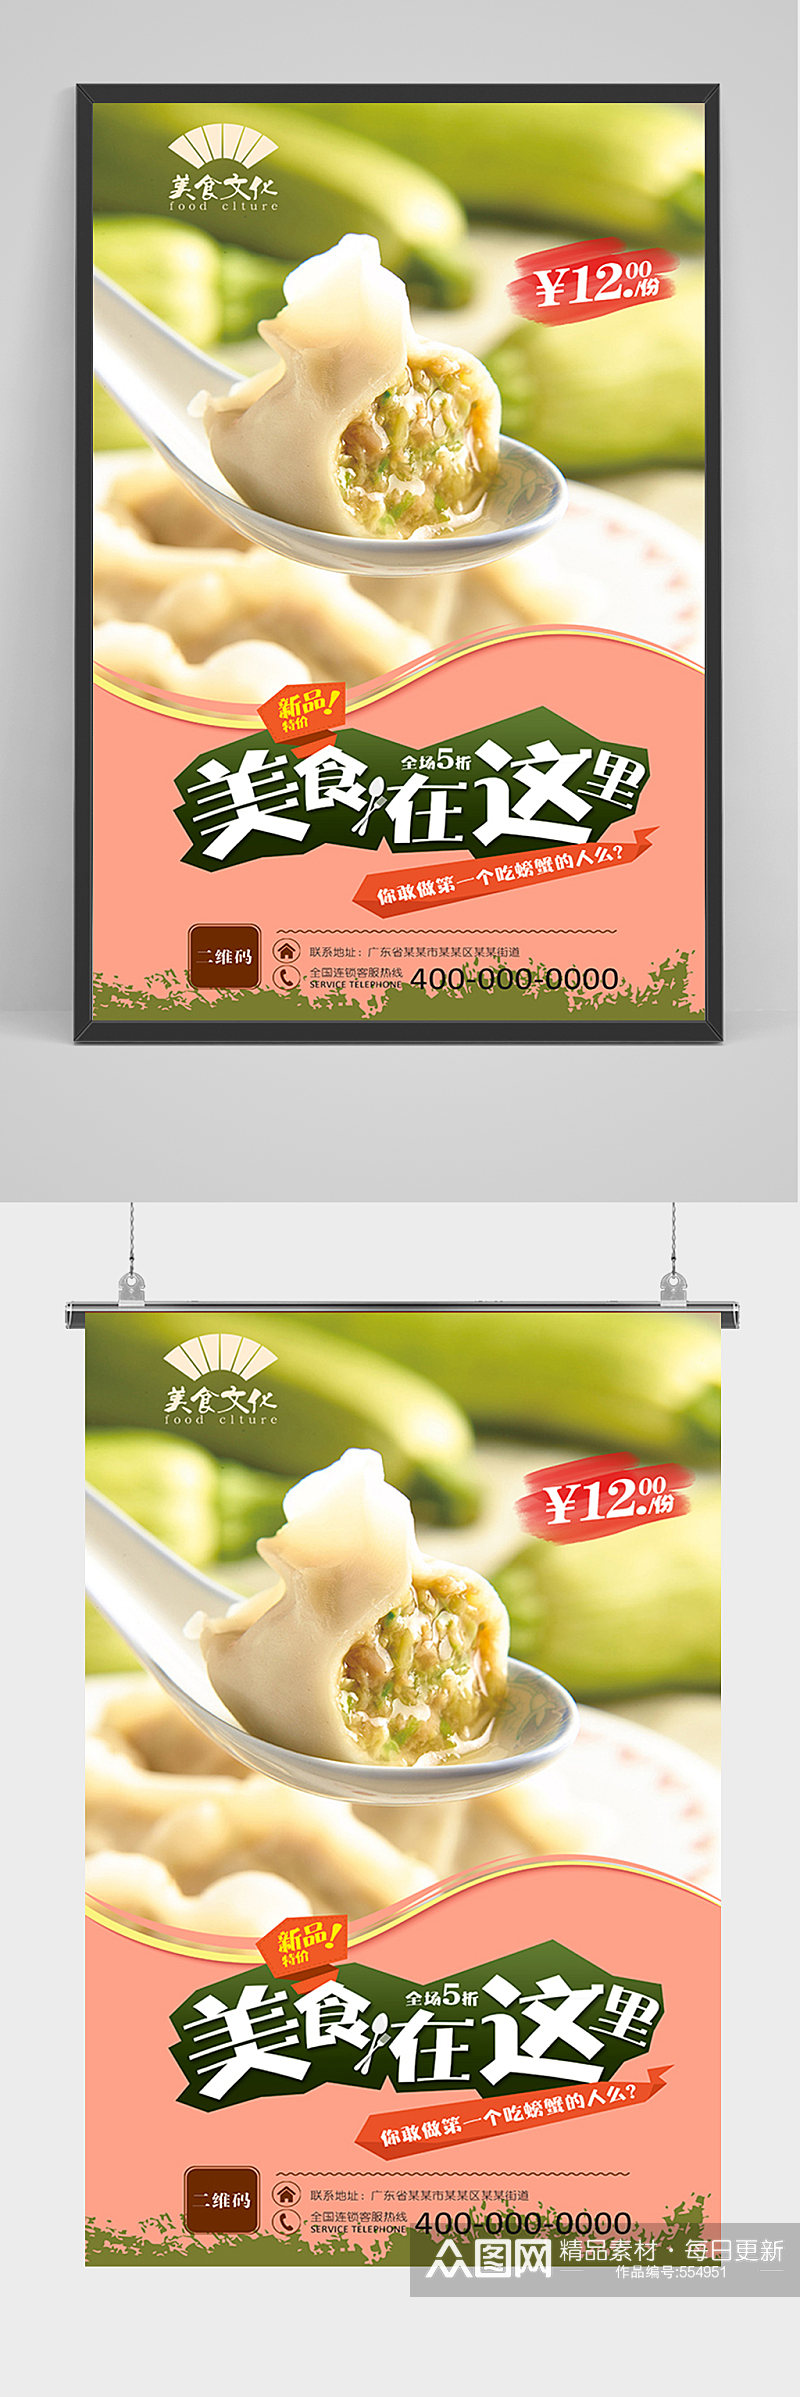 美食东北水饺促销海报素材